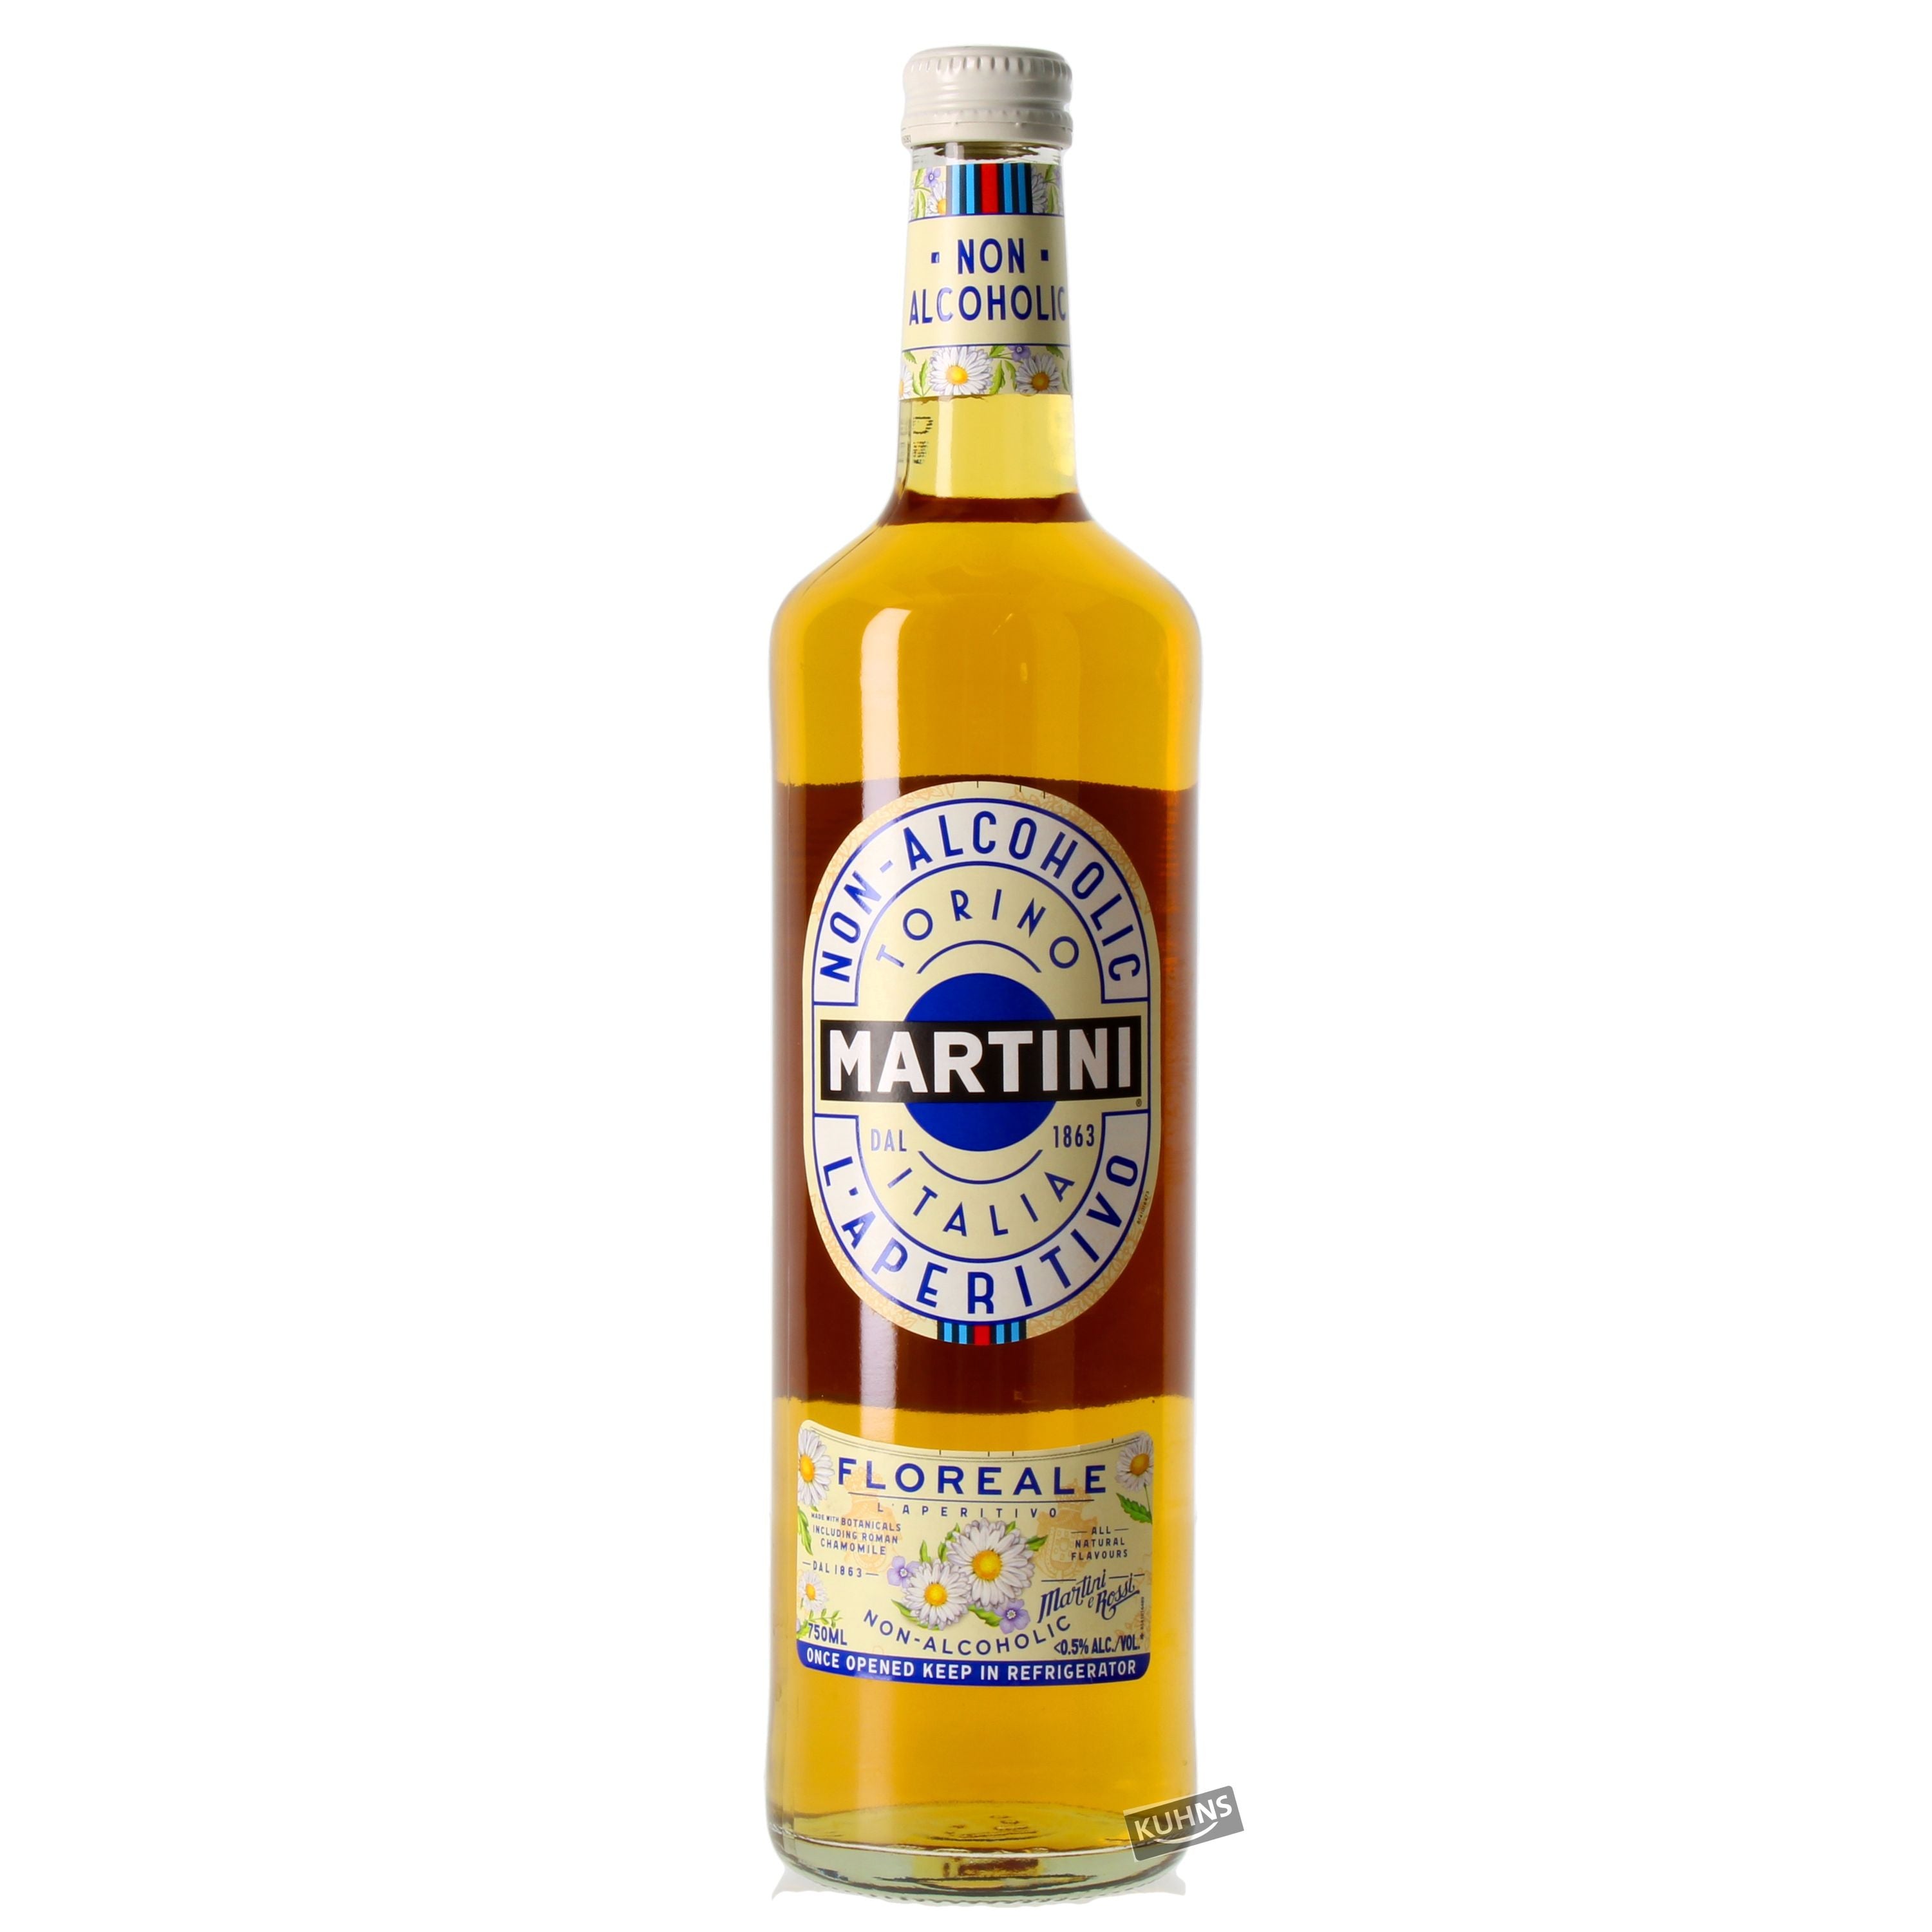 Martini Floreale non-alcoholic 0.75l, alc. &lt;0.5% by volume Alcohol-free aperitif